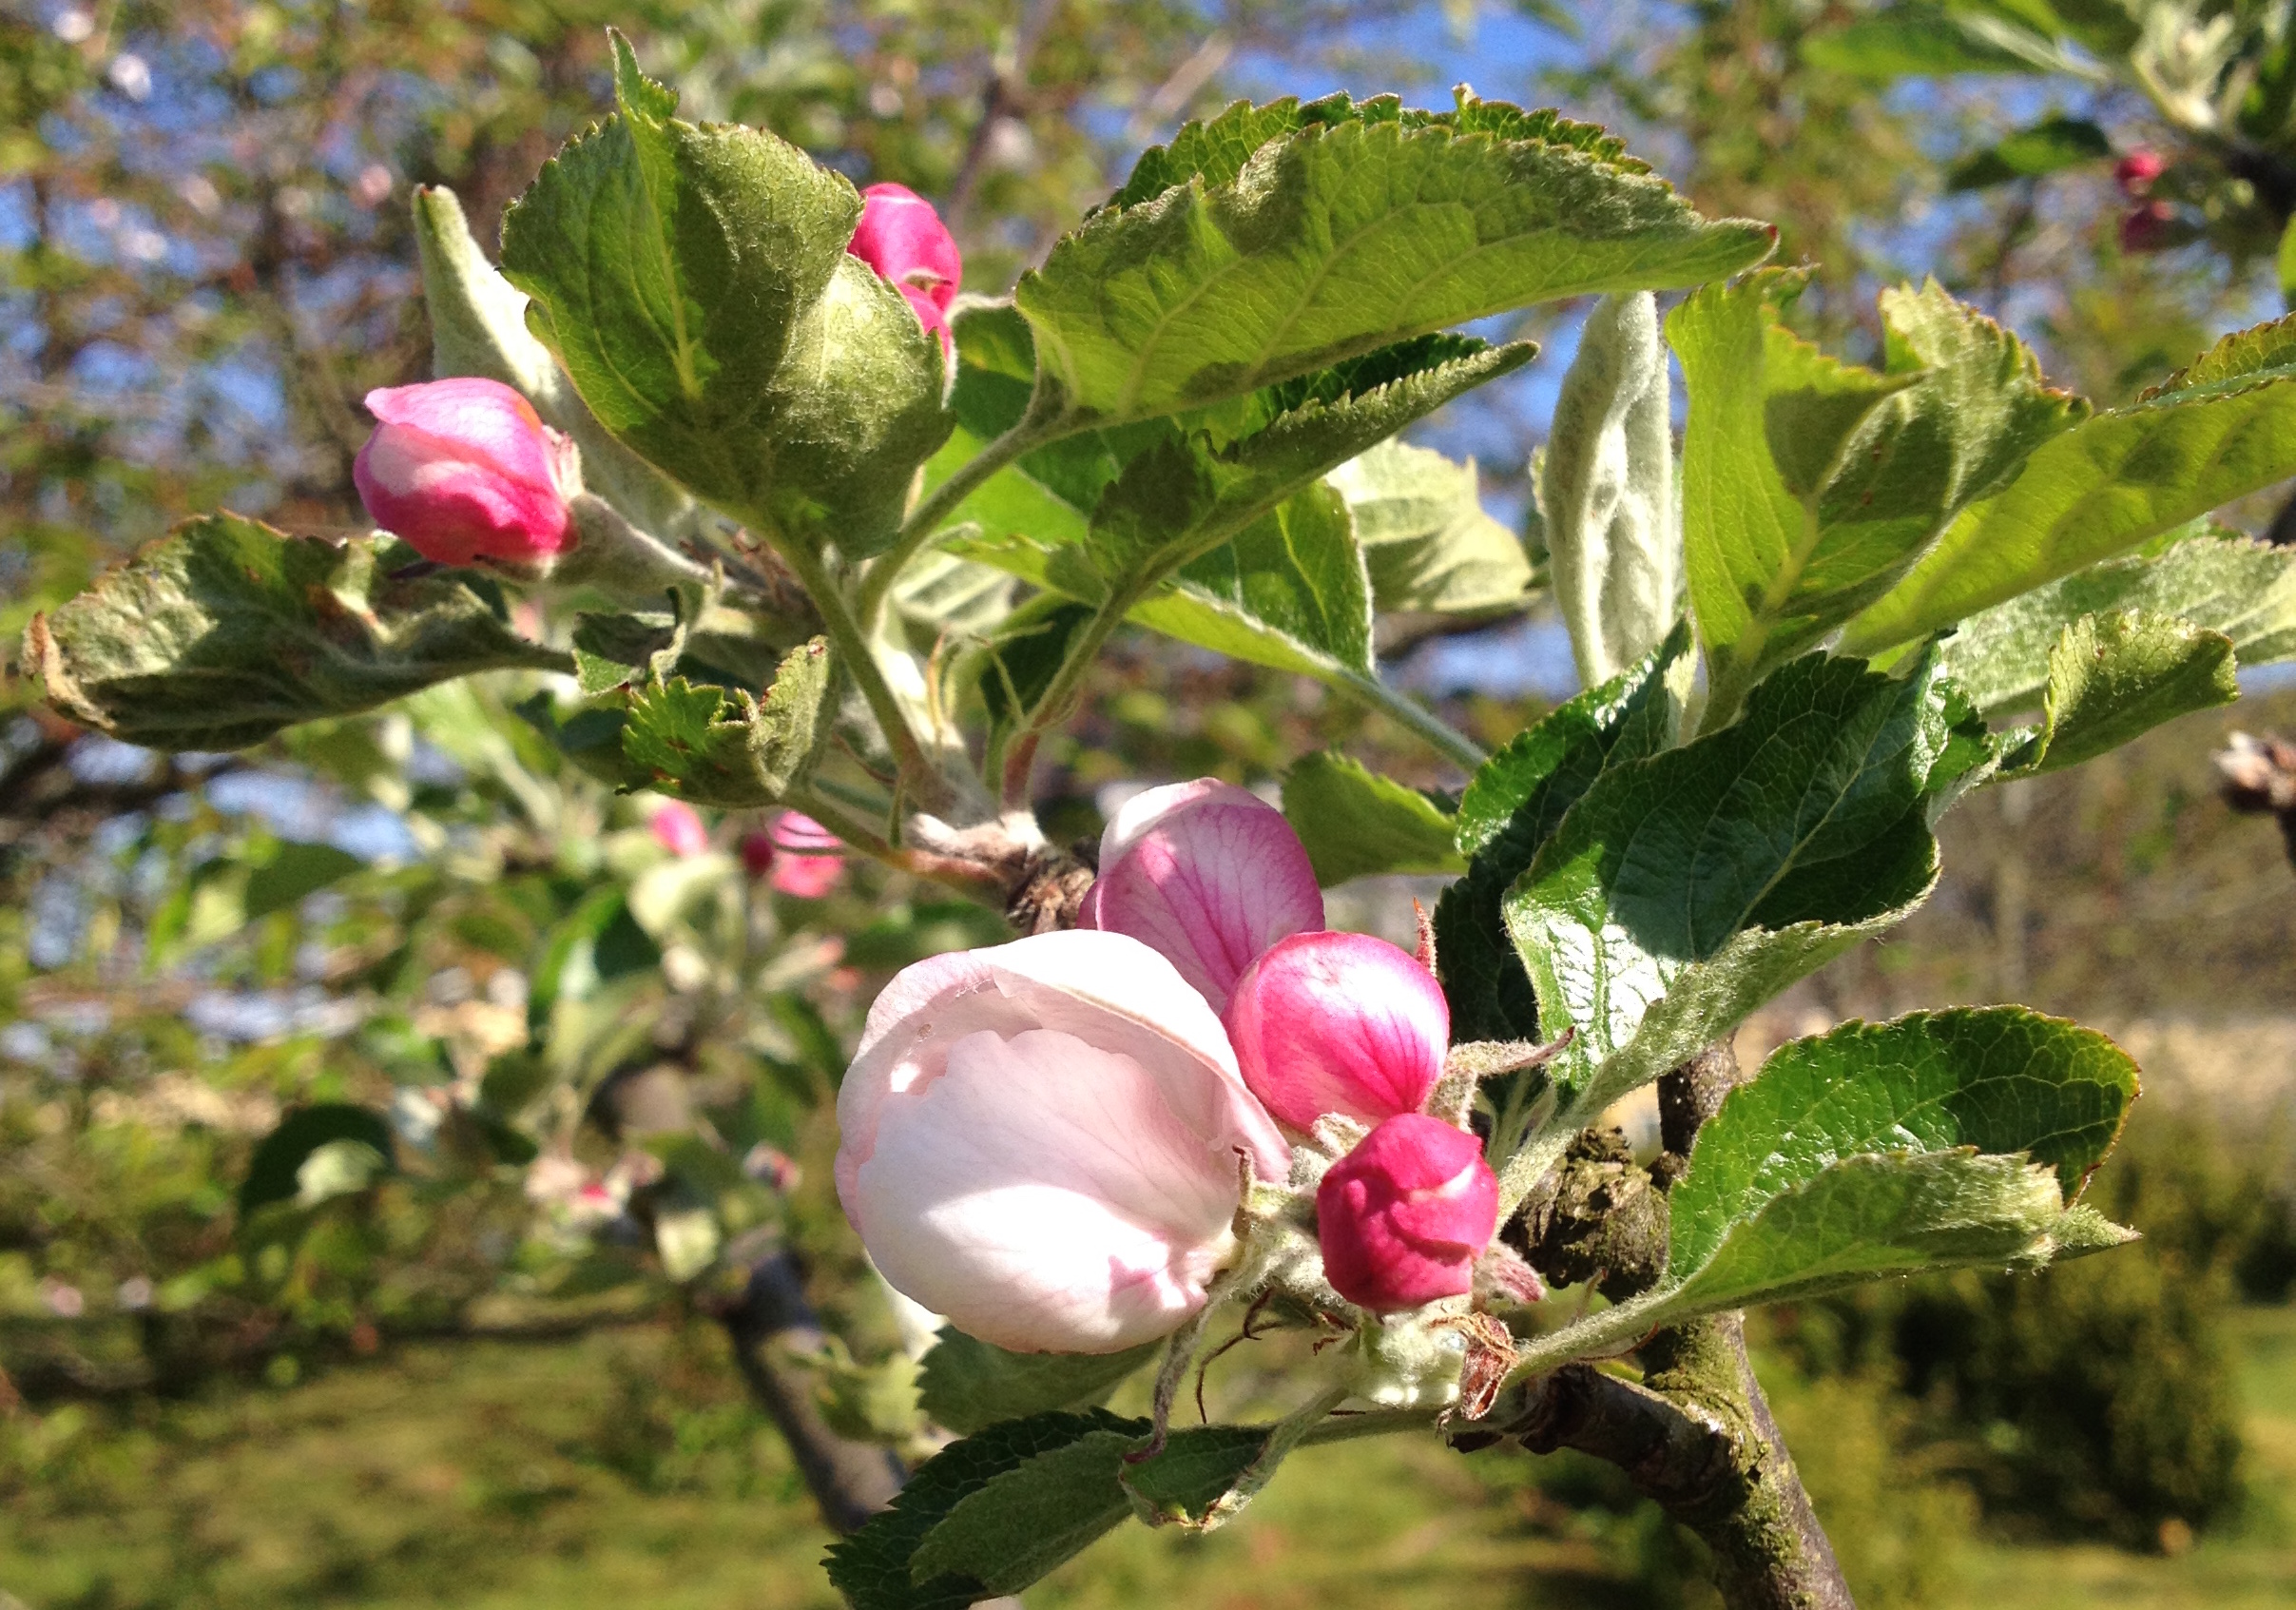 æbletræ i blomst.JPG